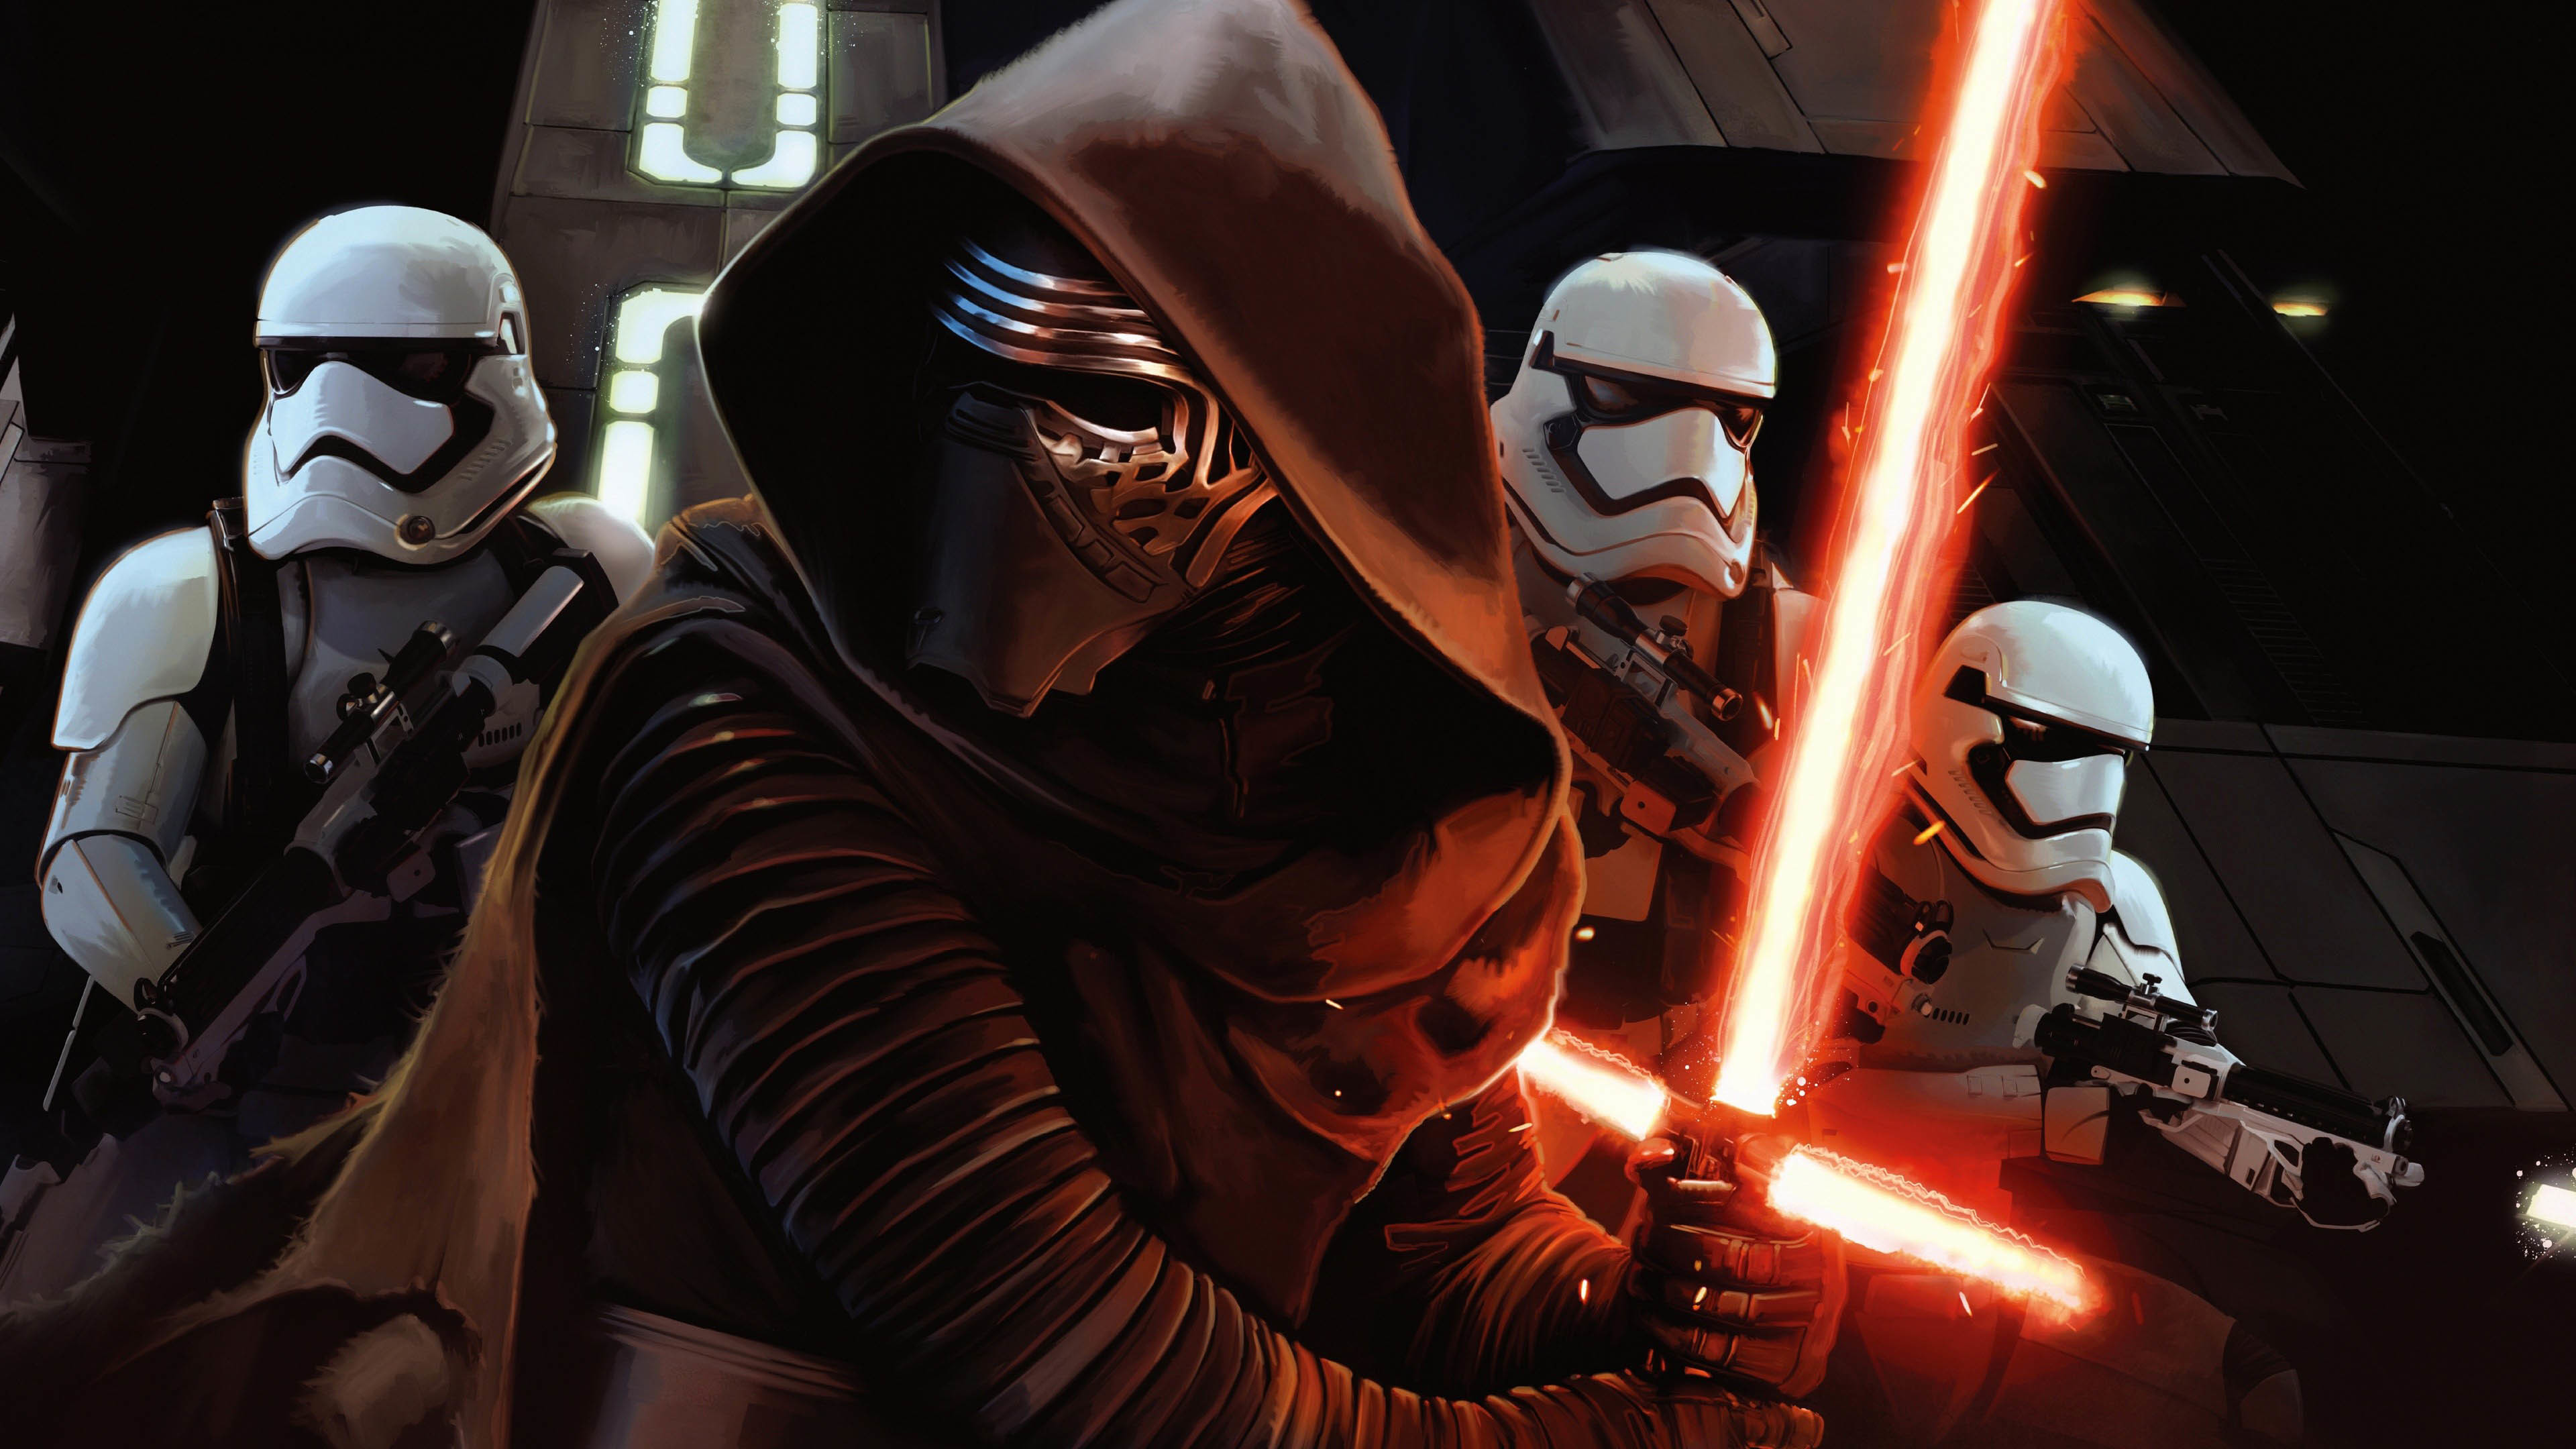 3840x2160 Kylo Ren & Stormtroopers - Star Wars: The Force Awakens  wallpaper